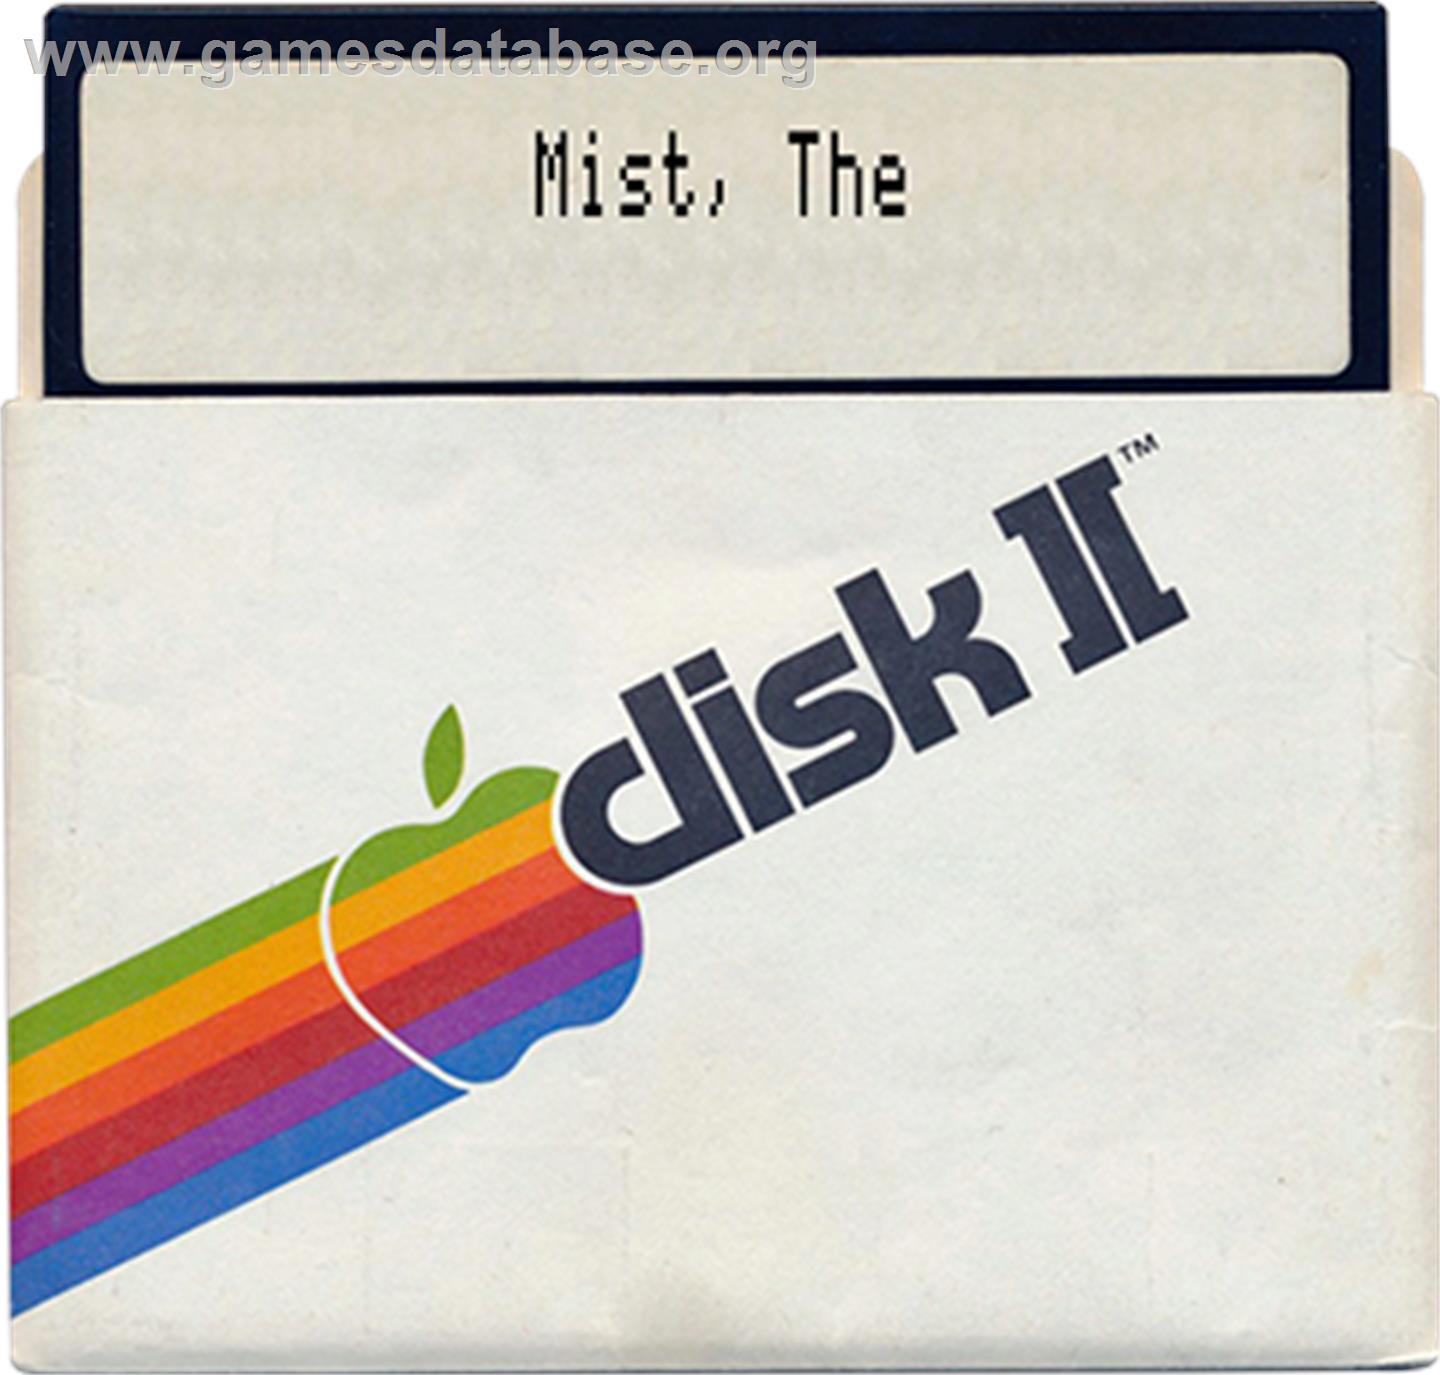 Mist - Apple II - Artwork - Disc